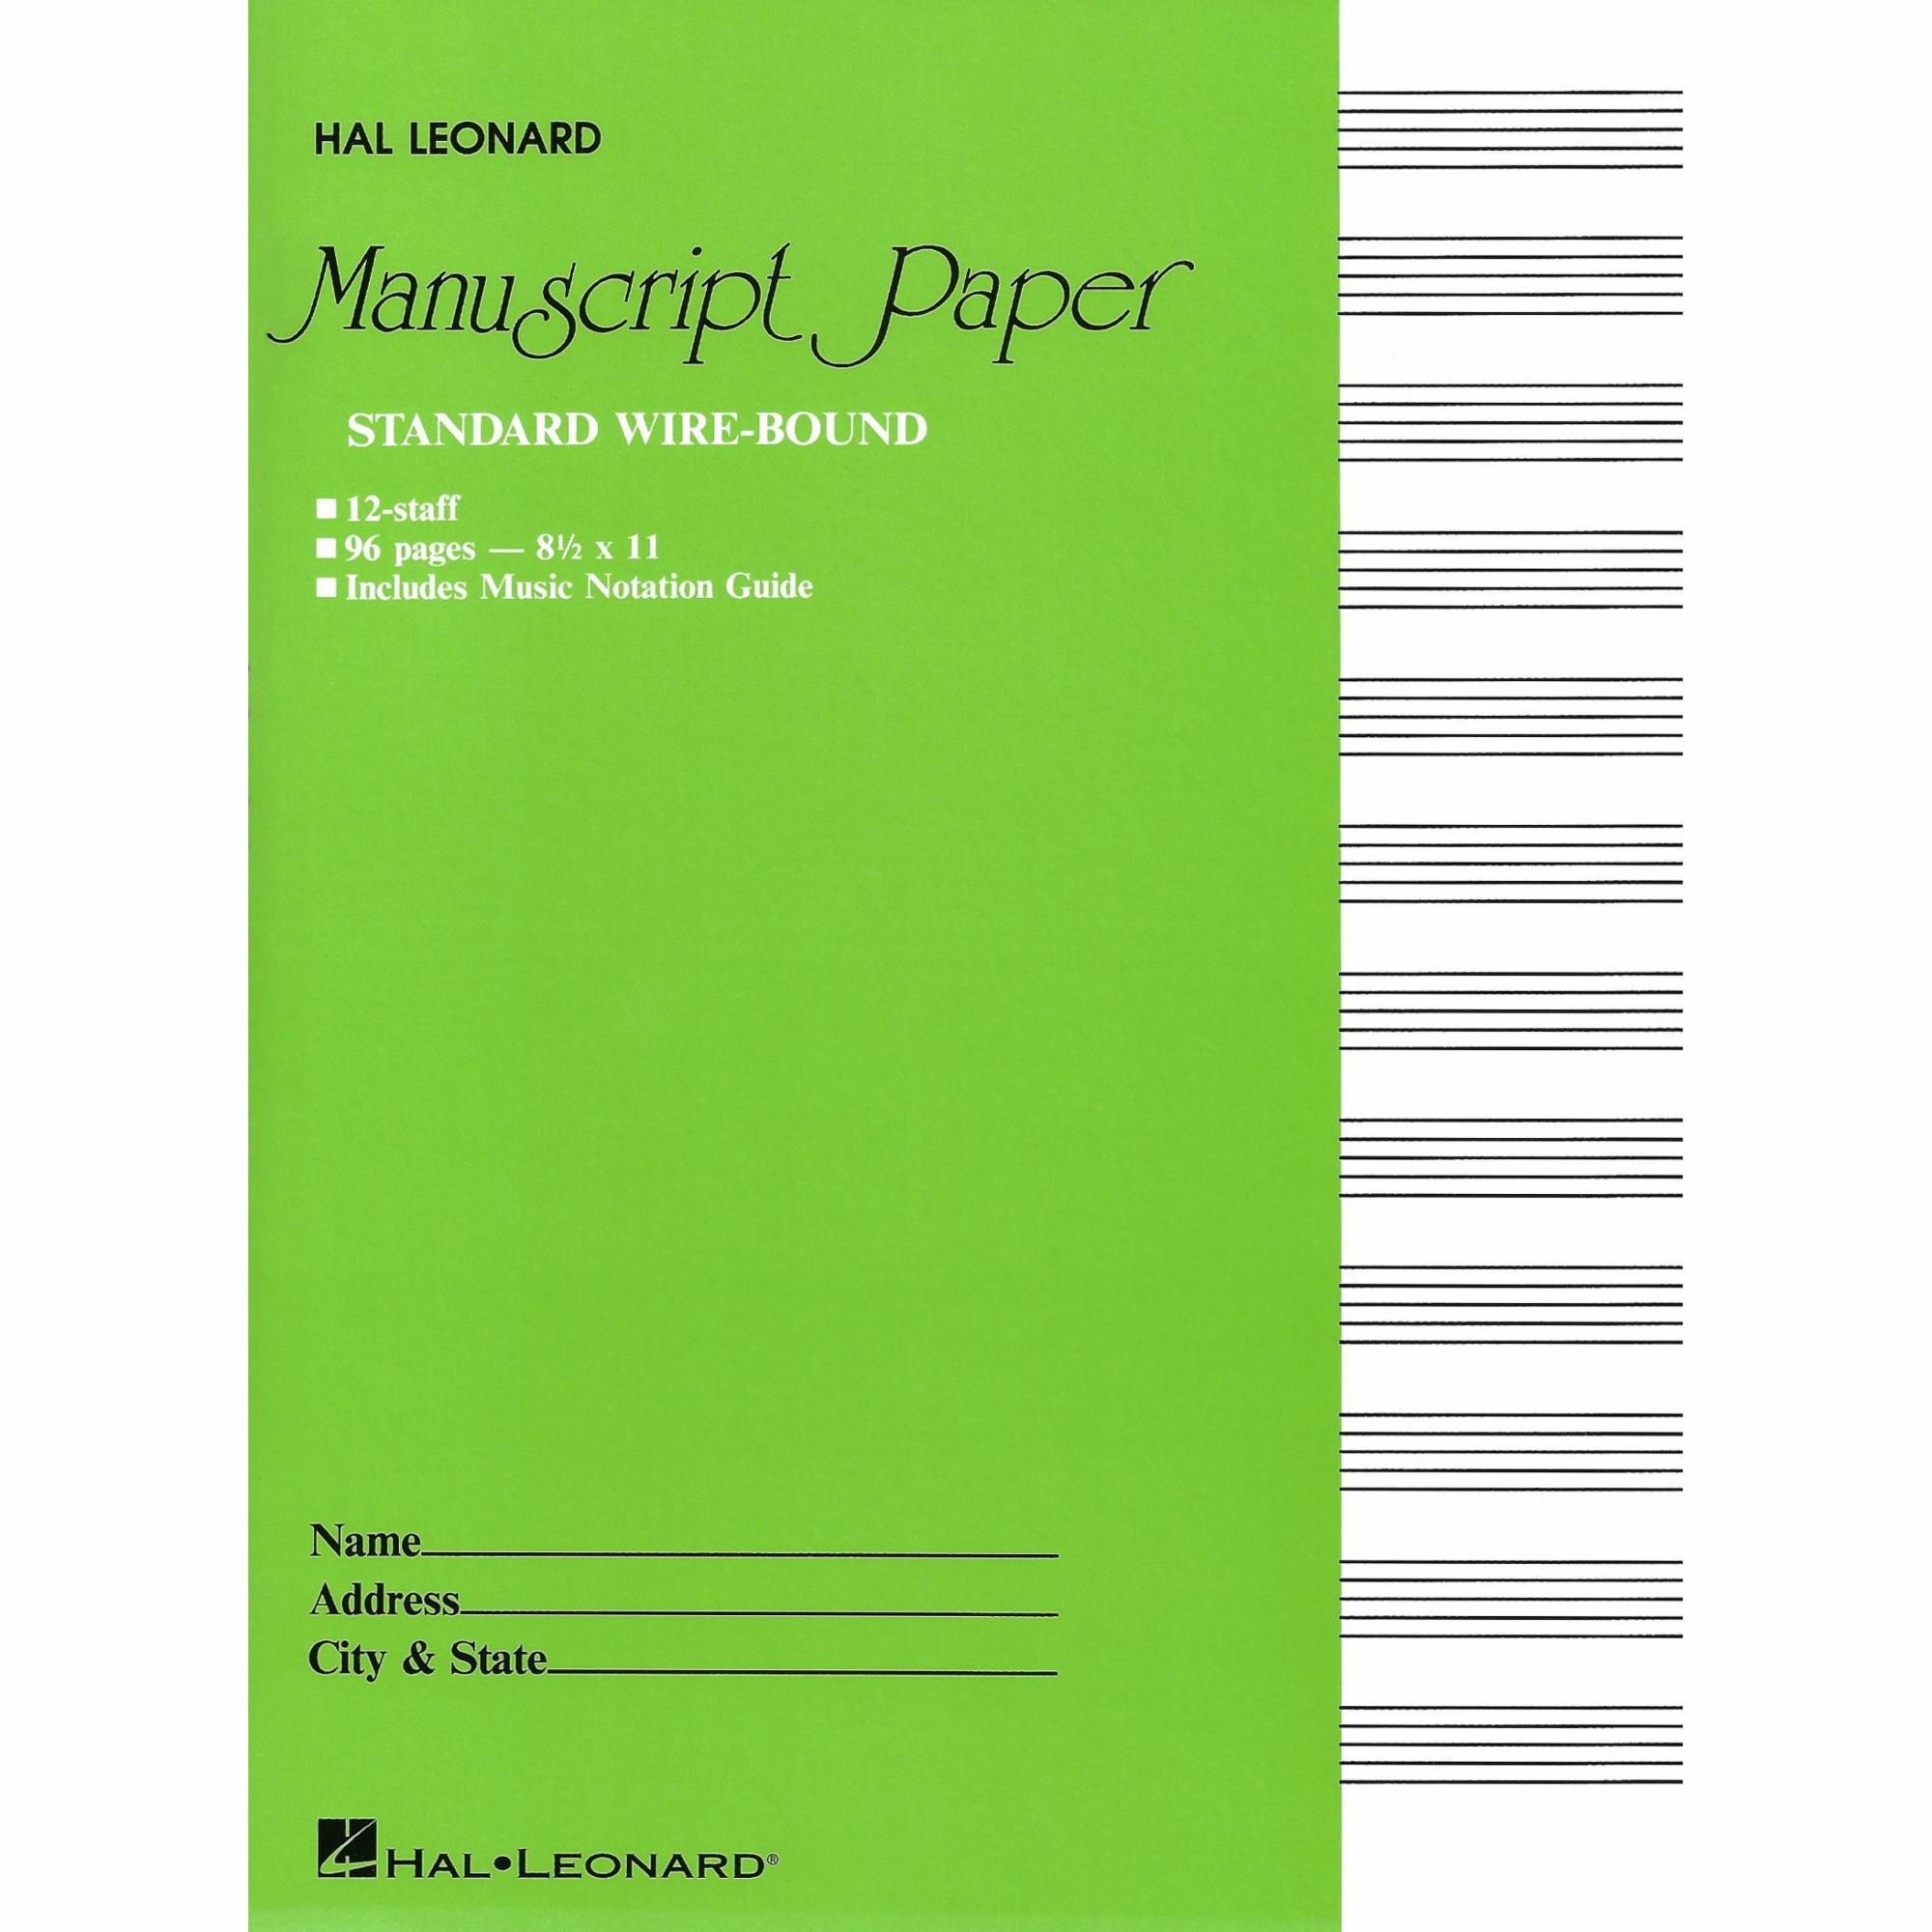 Standard Wire-Bound Manuscript Paper